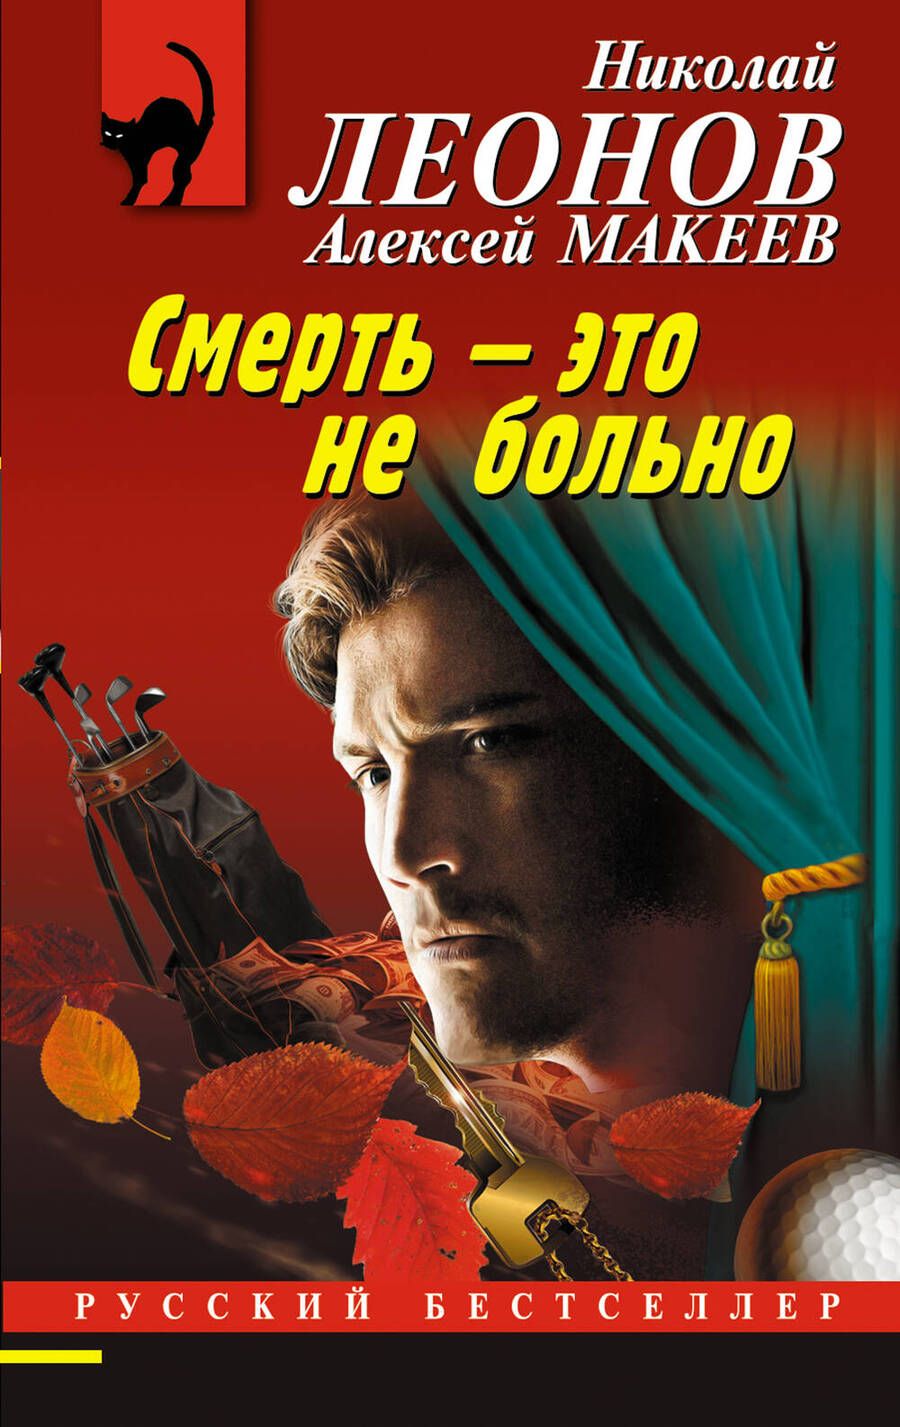 Обложка книги "Леонов, Макеев: Смерть – это не больно"